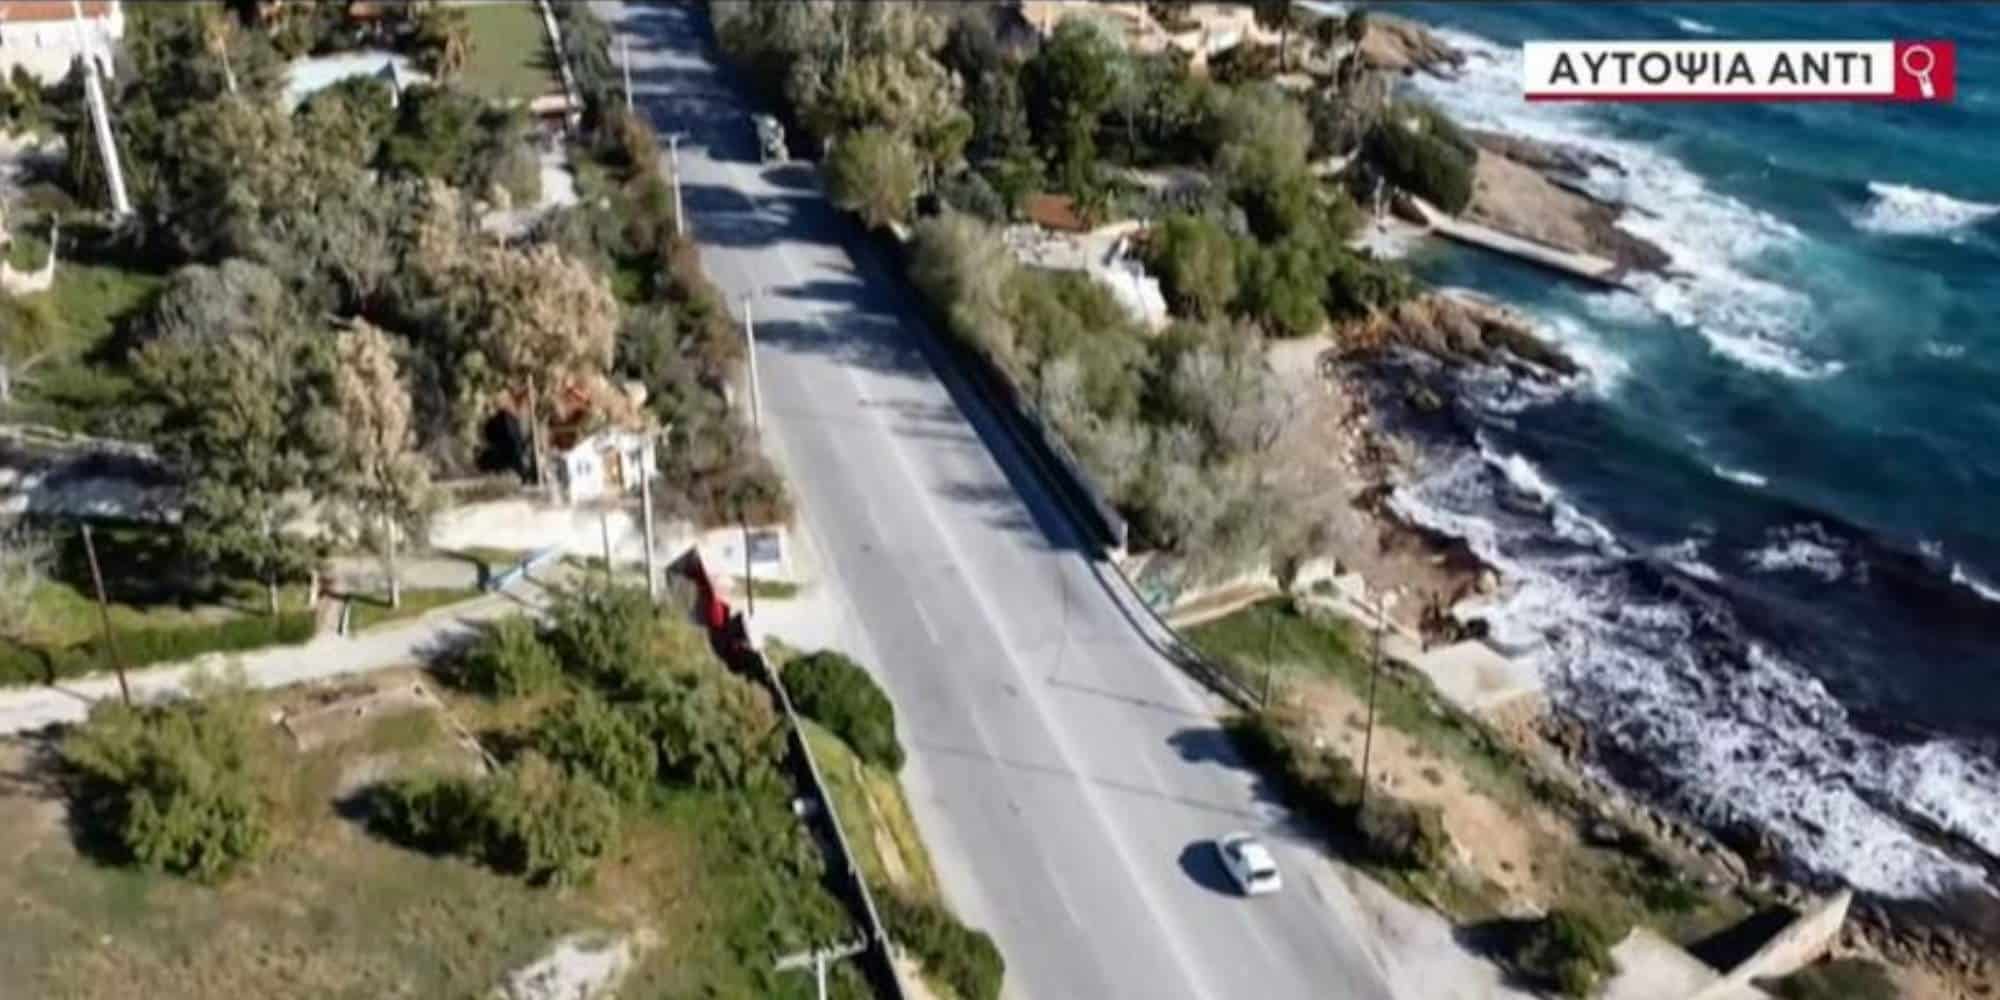 Πανοραμική εικόνα από το σημείο όπου έγινε το τροχαίο δυστύχημα στο Λαγονήσι